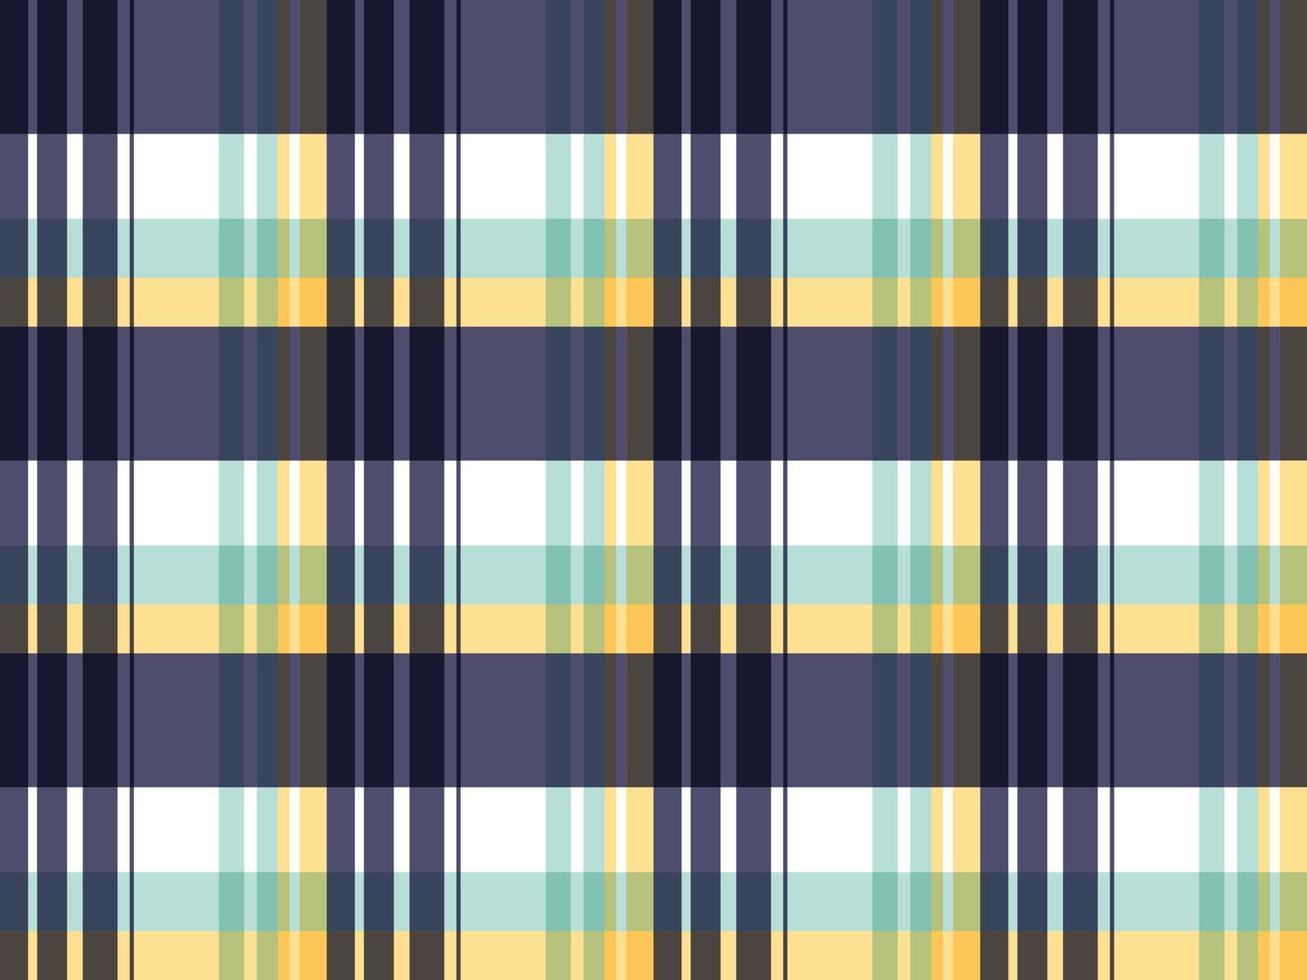 madras check textile plaid pattern couleur pastel vectorielle continue un motif avec des rayures aux couleurs vives d'épaisseur variable qui se croisent pour créer des carreaux inégaux. généralement utilisé sur les chemises. vecteur